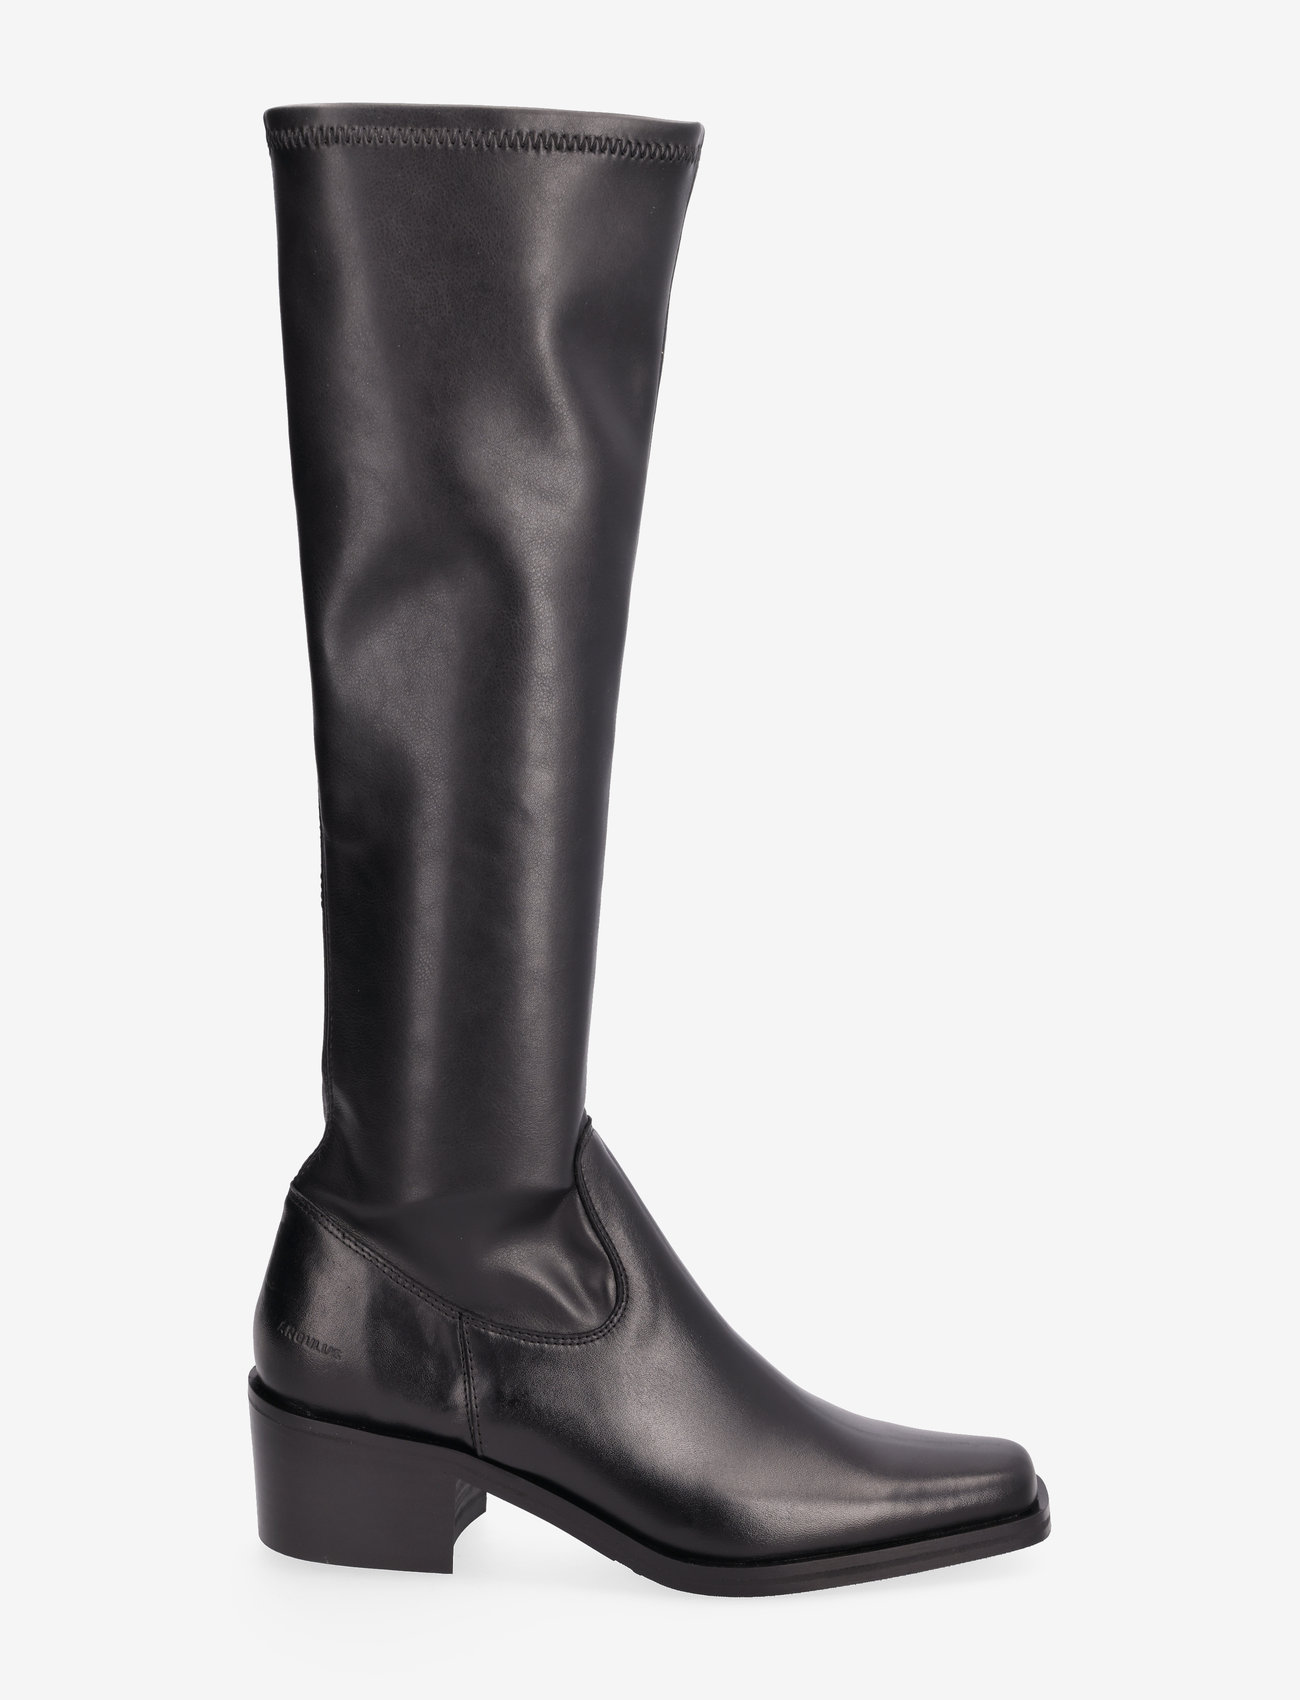 ANGULUS - Boots - Block heel - kozaki klasyczne - 1604/1746 black/black - 1